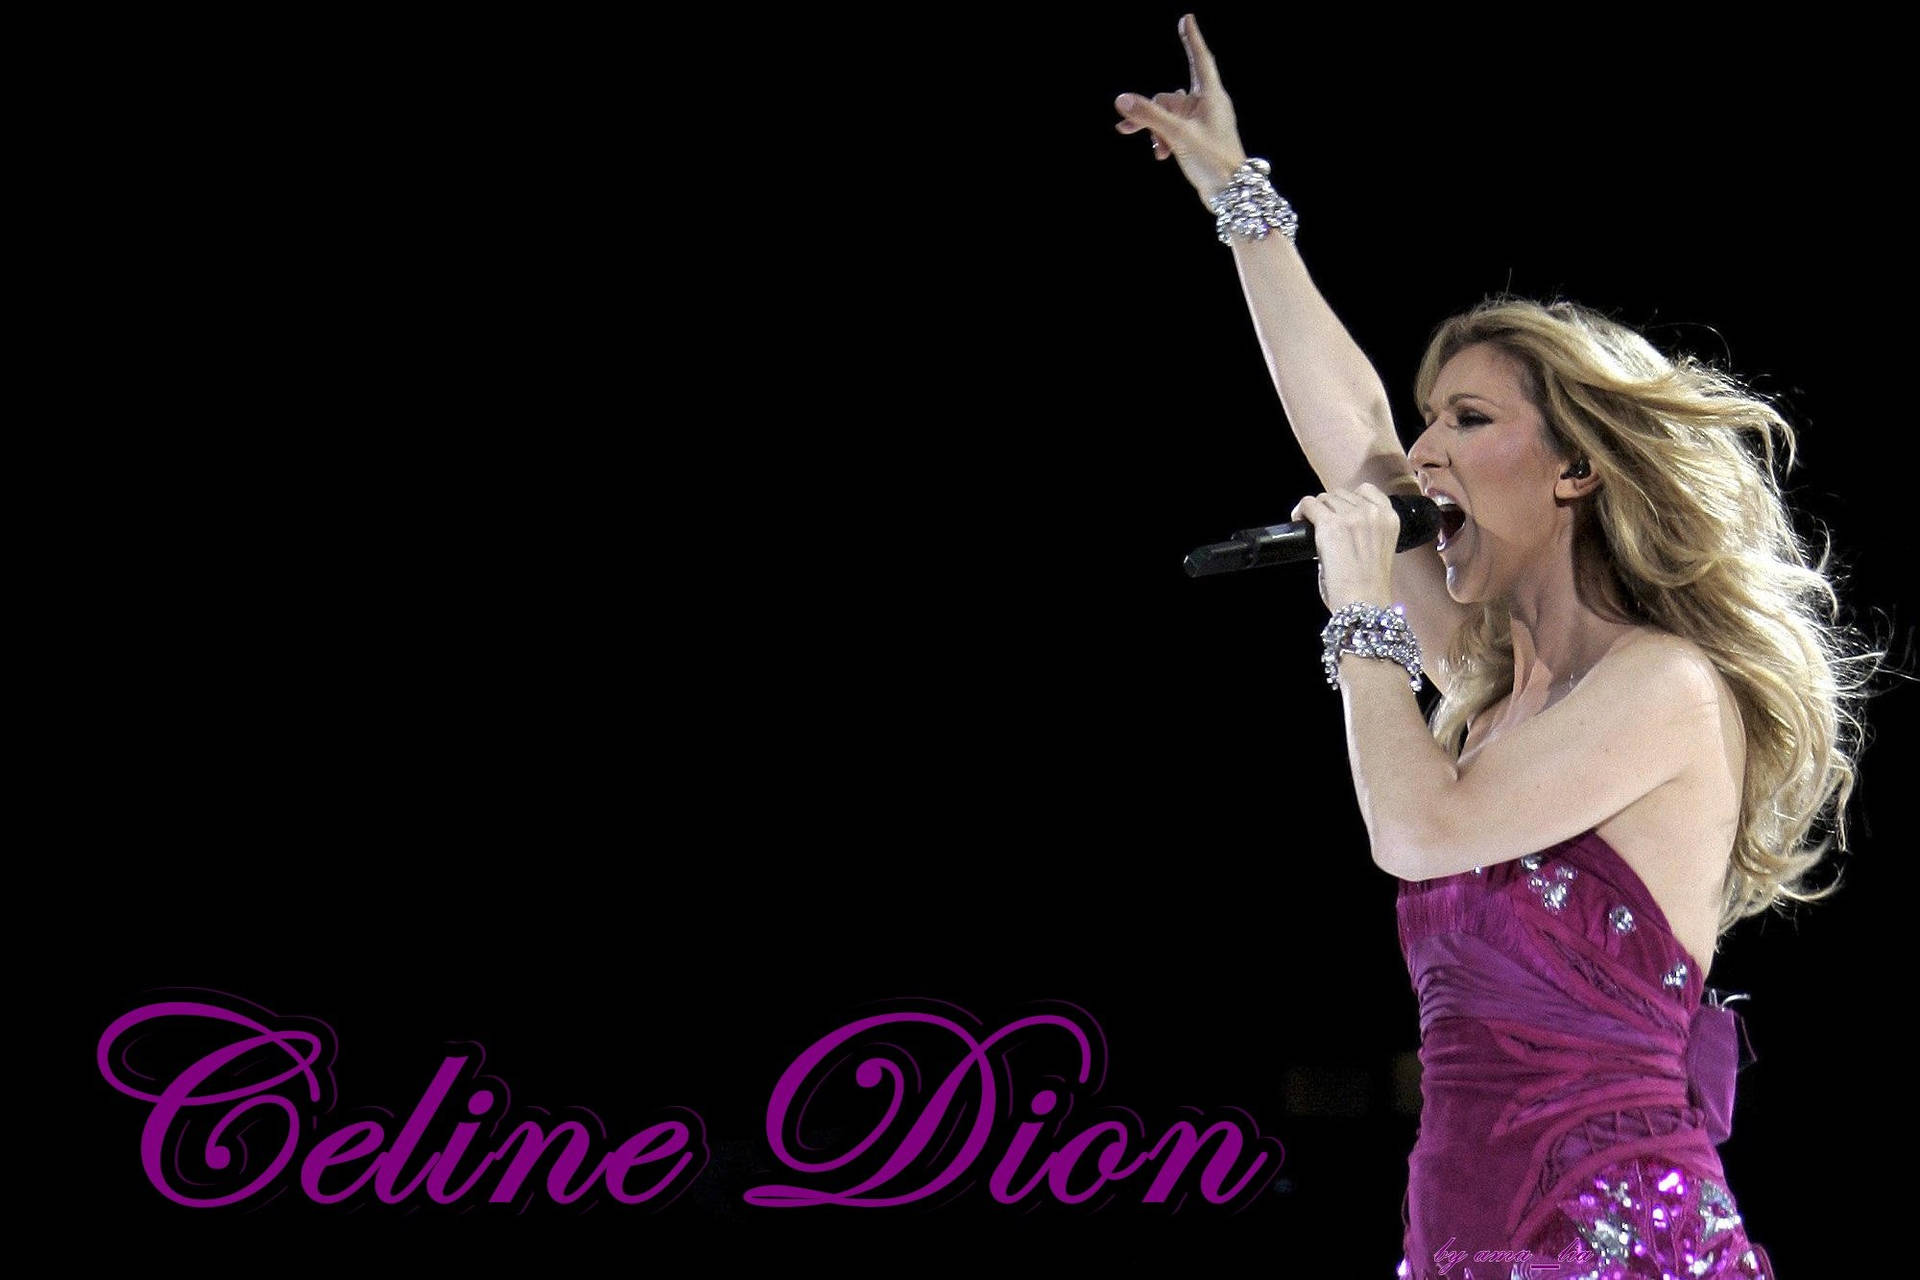 Celine Dion Singing During Concert Background